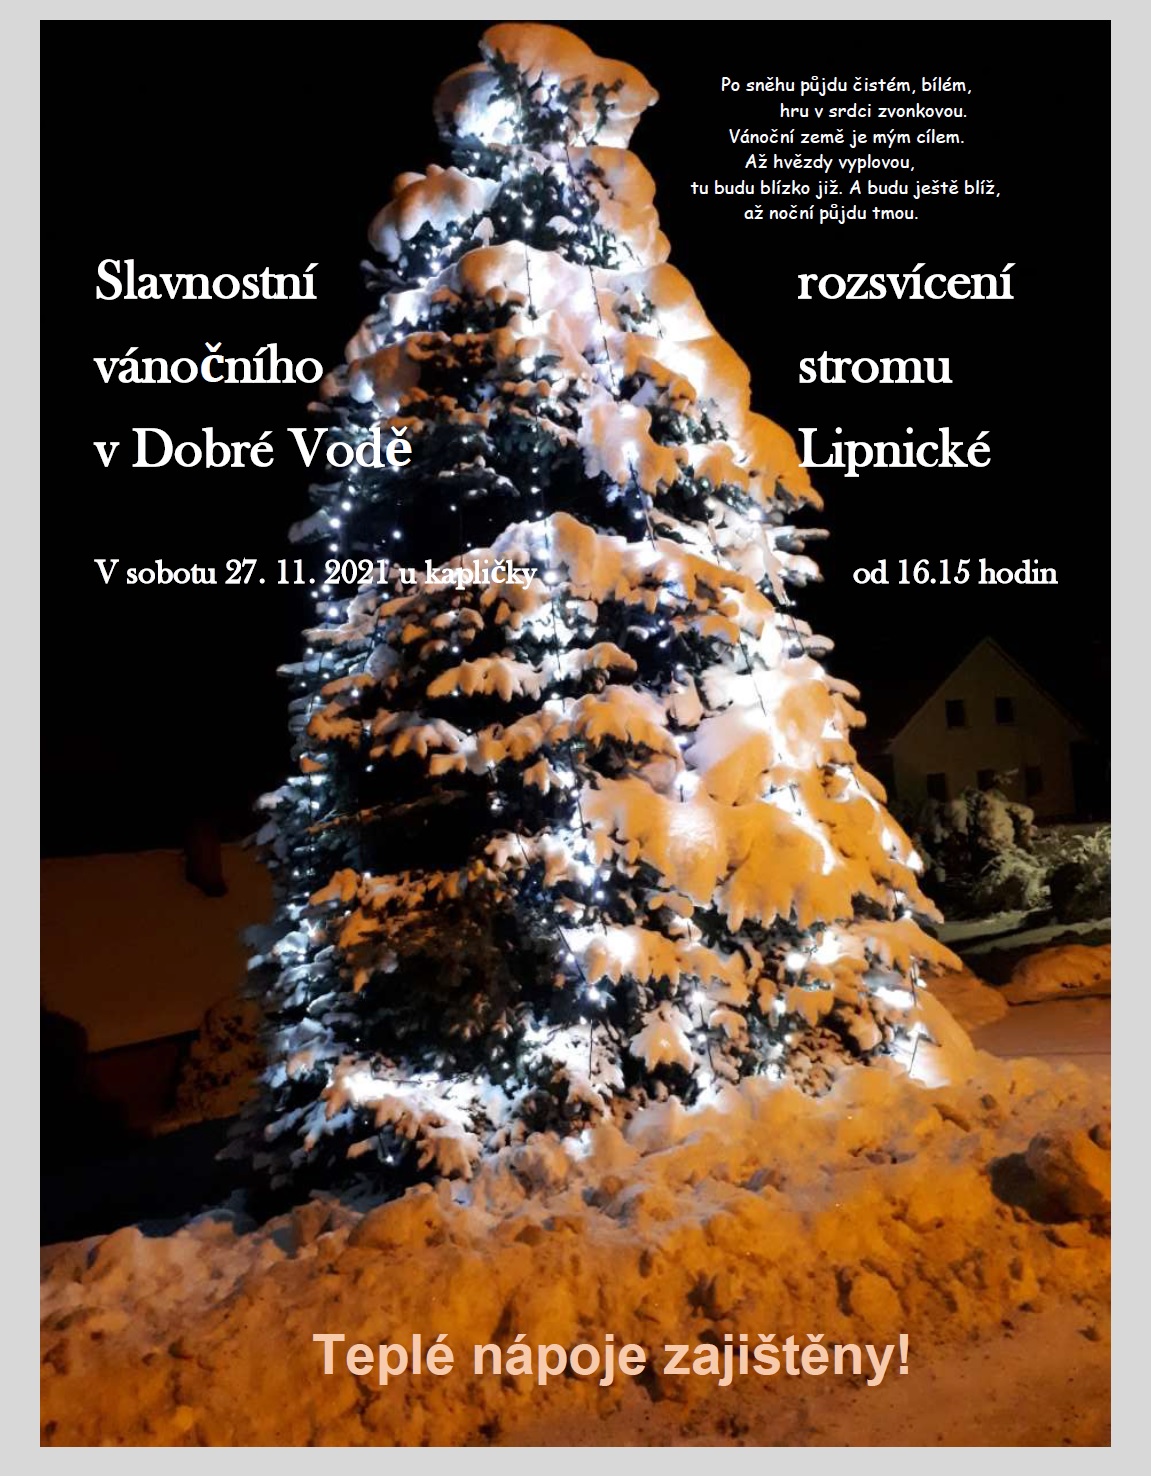 Slavnostní rozsvícení vánočního stromu v Dobré Vodě